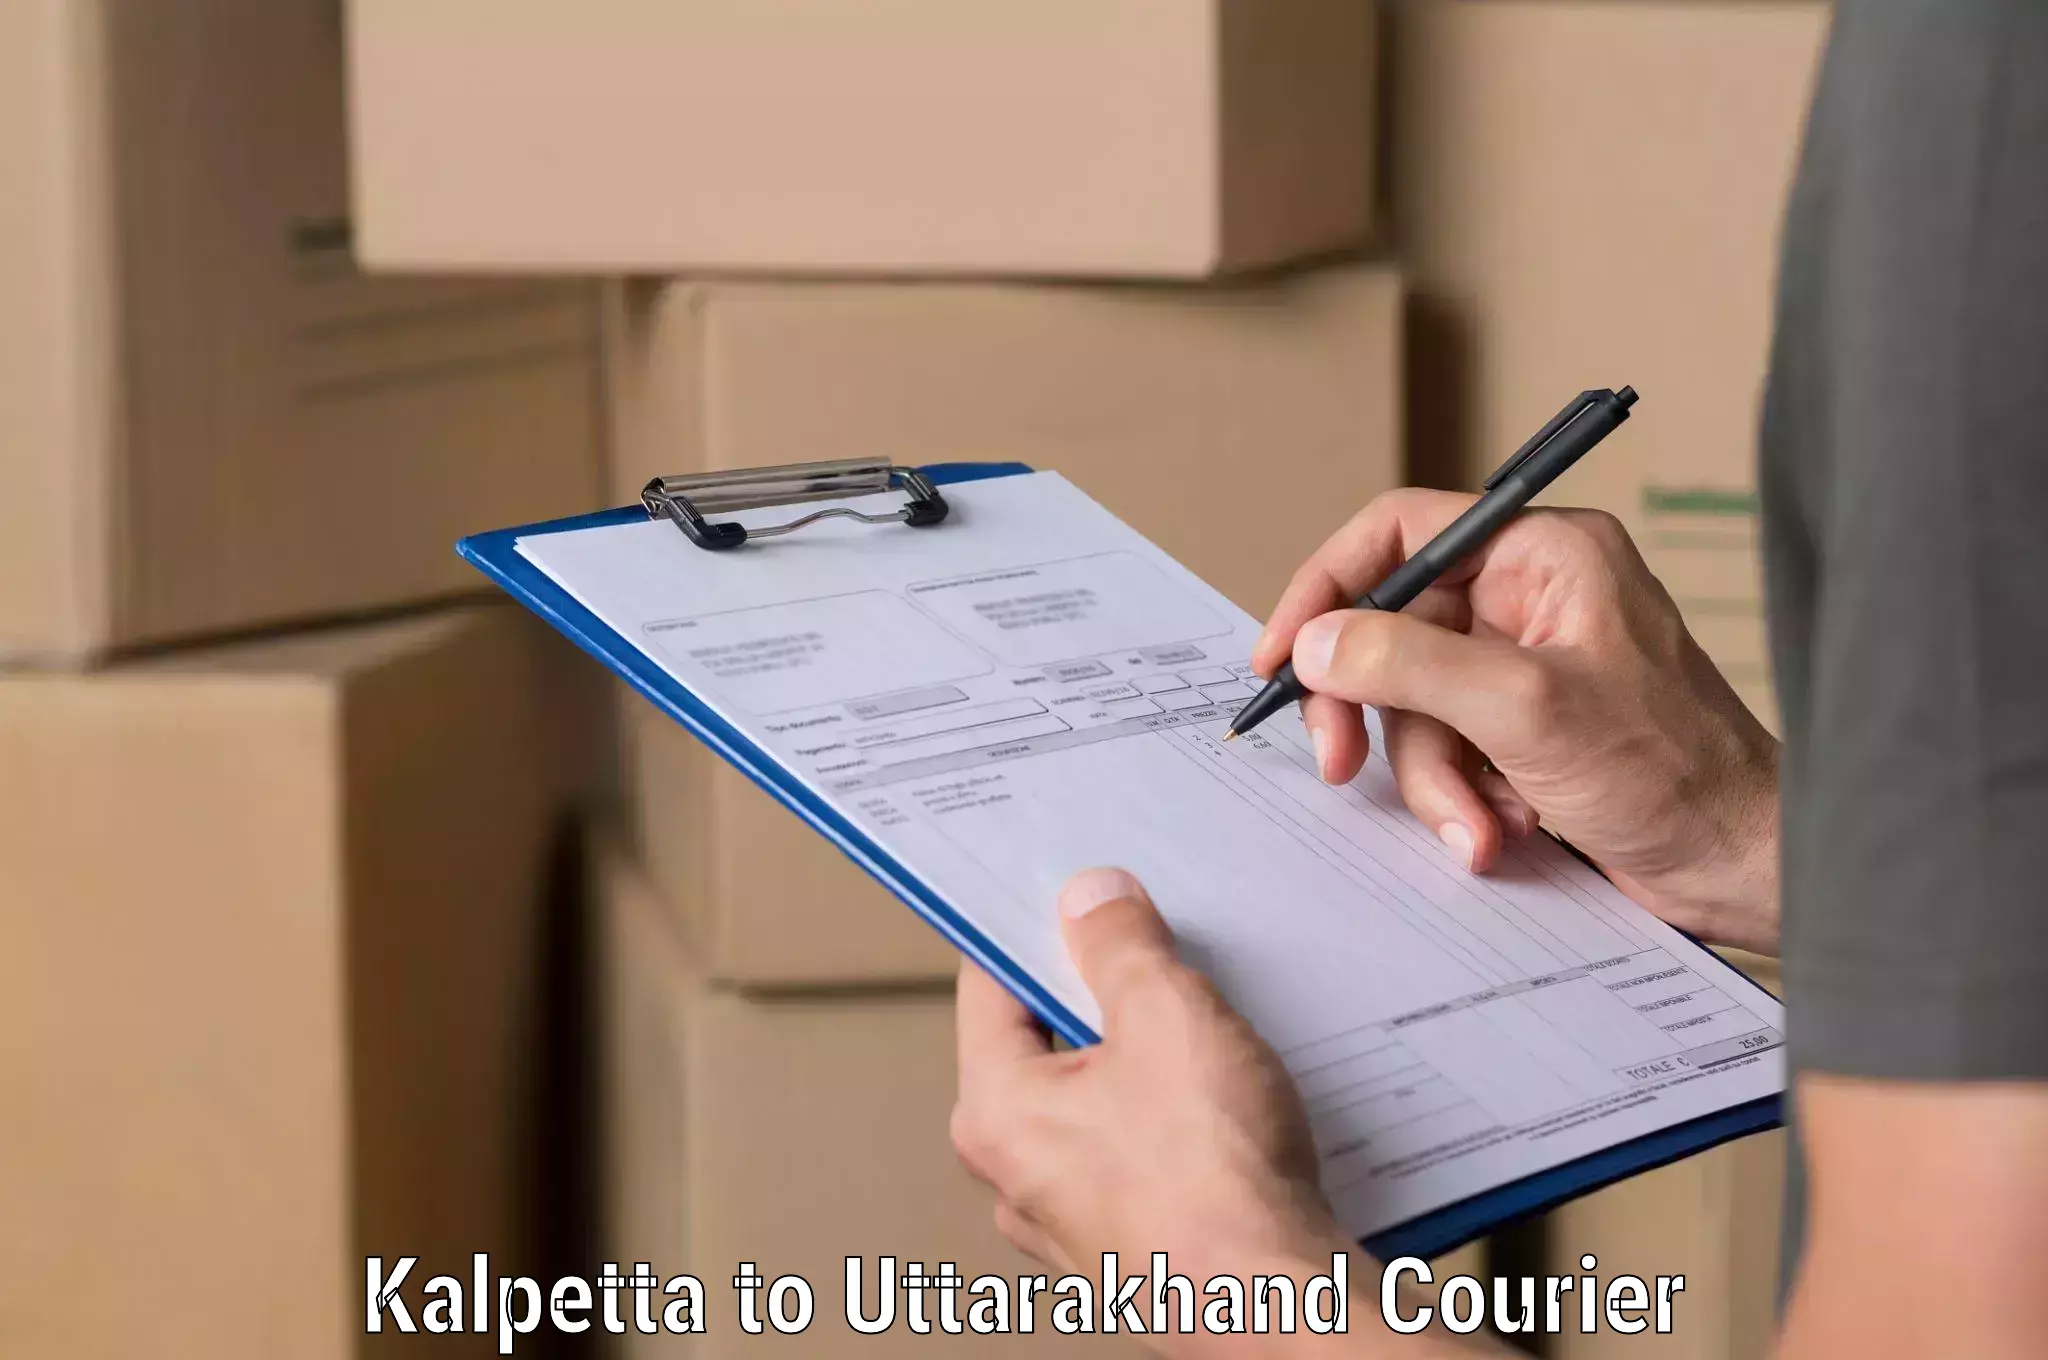 High-speed logistics services Kalpetta to Udham Singh Nagar